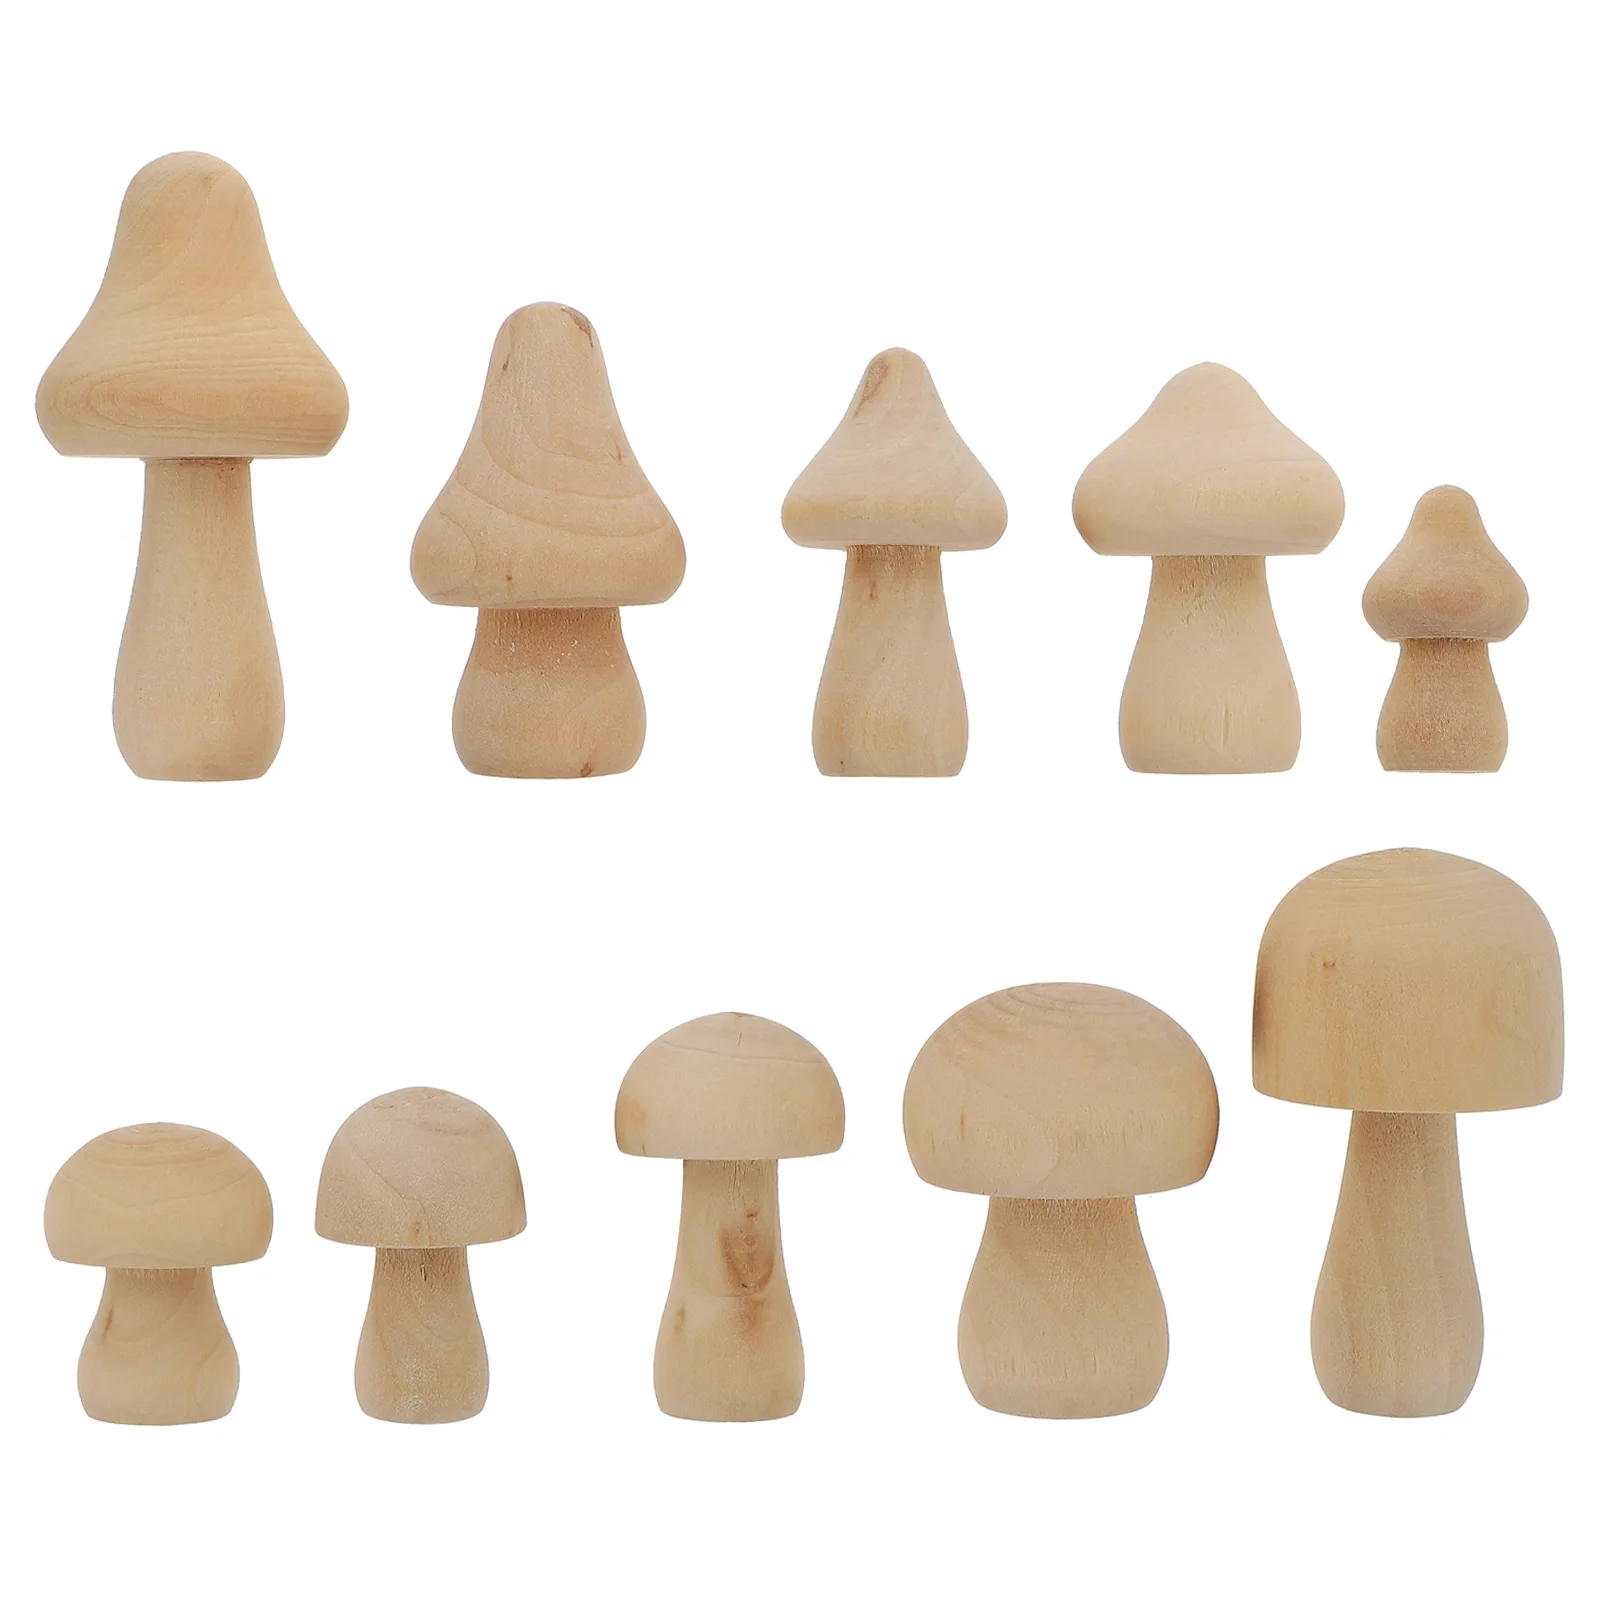 

10 Pcs Decoration Mushroom Unfinished Peg Dolls Craft Toys Mini Figurines Wooden Ornaments Head Unpainted Mushrooms